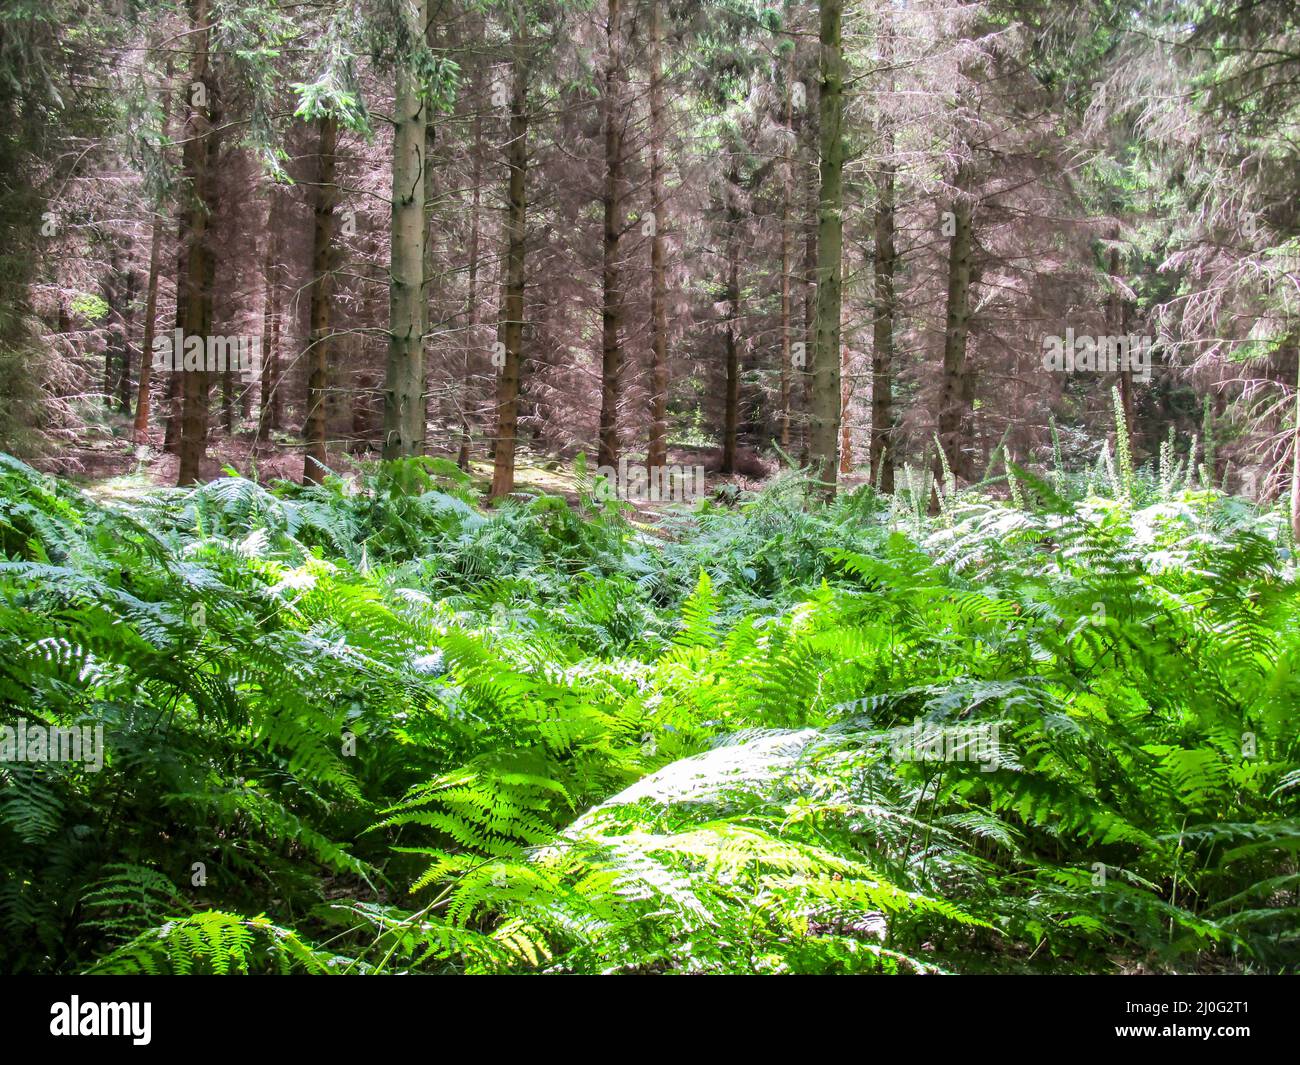 Vista monocromatica di felci verdi e conifere marroni in un bosco delle Chiltern Hills, nel Regno Unito meridionale. Le colline Chiltern è una scarpata di gesso in E. Foto Stock